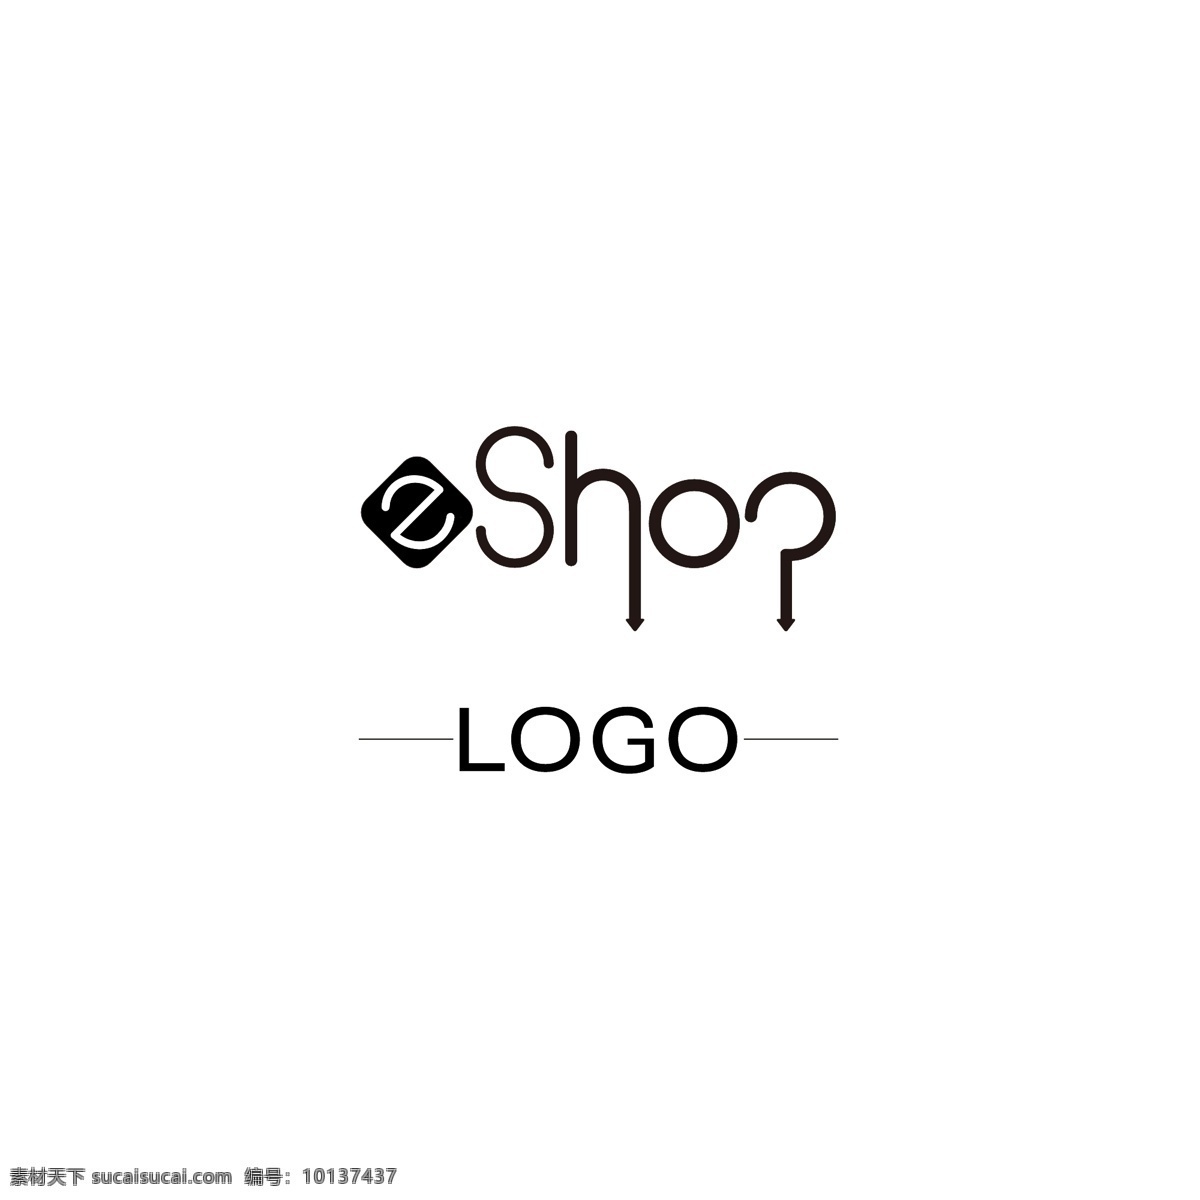 通用 logo 原创 企业 品牌 标识设计 标识 互联网 零售 网店 ai矢量